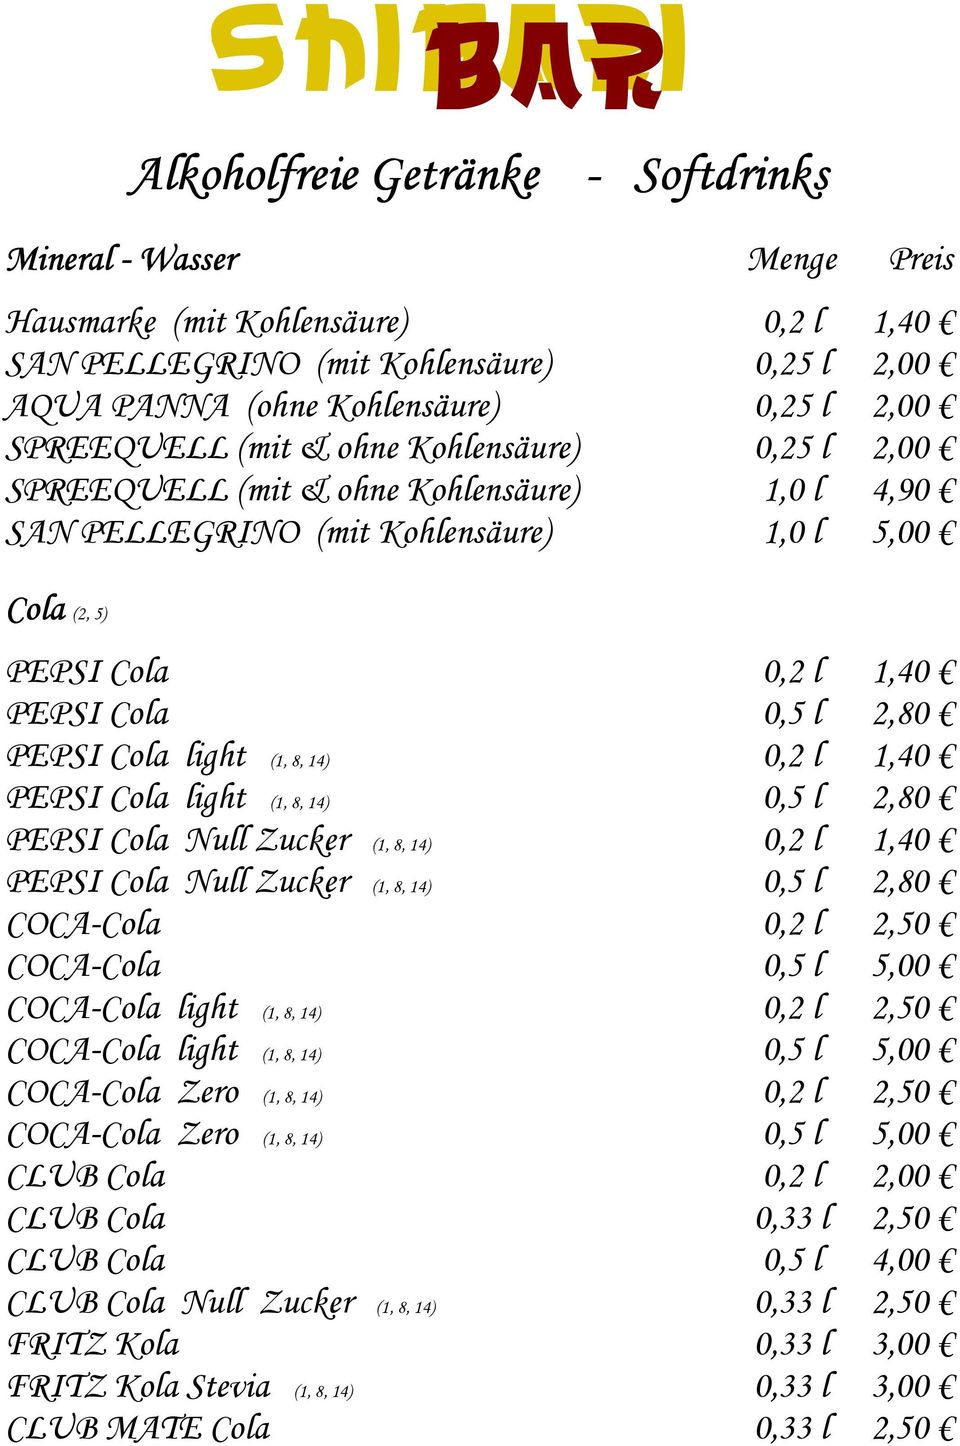 (1, 8, 14) 0,2 l 1,40 PEPSI Cola light (1, 8, 14) 0,5 l 2,80 PEPSI Cola Null Zucker (1, 8, 14) 0,2 l 1,40 PEPSI Cola Null Zucker (1, 8, 14) 0,5 l 2,80 COCA-Cola 0,2 l 2,50 COCA-Cola 0,5 l 5,00